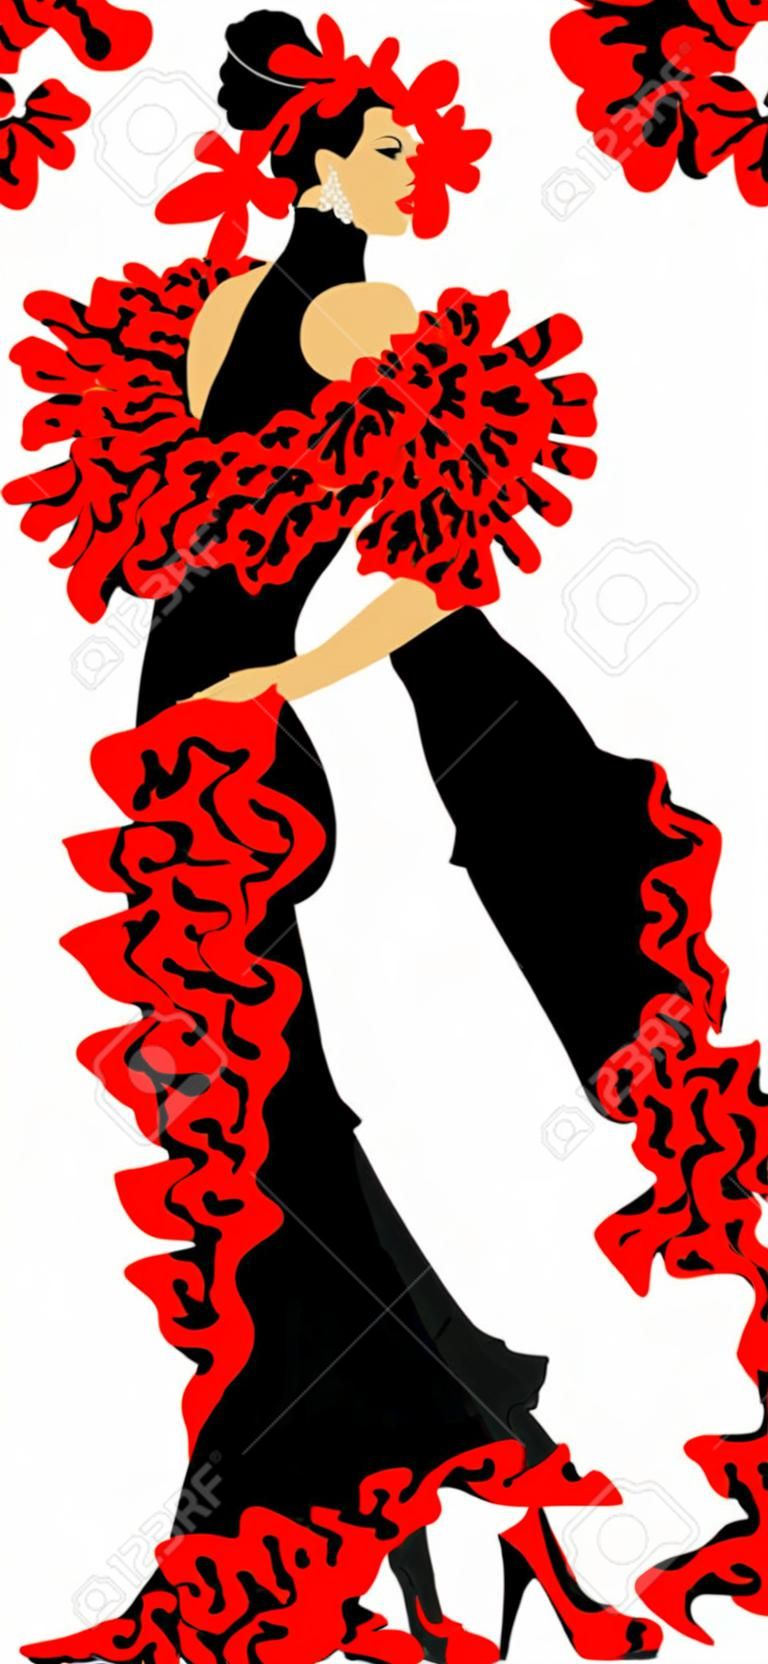 bailarina en el vestido negro de baile flamenco (ilustración);